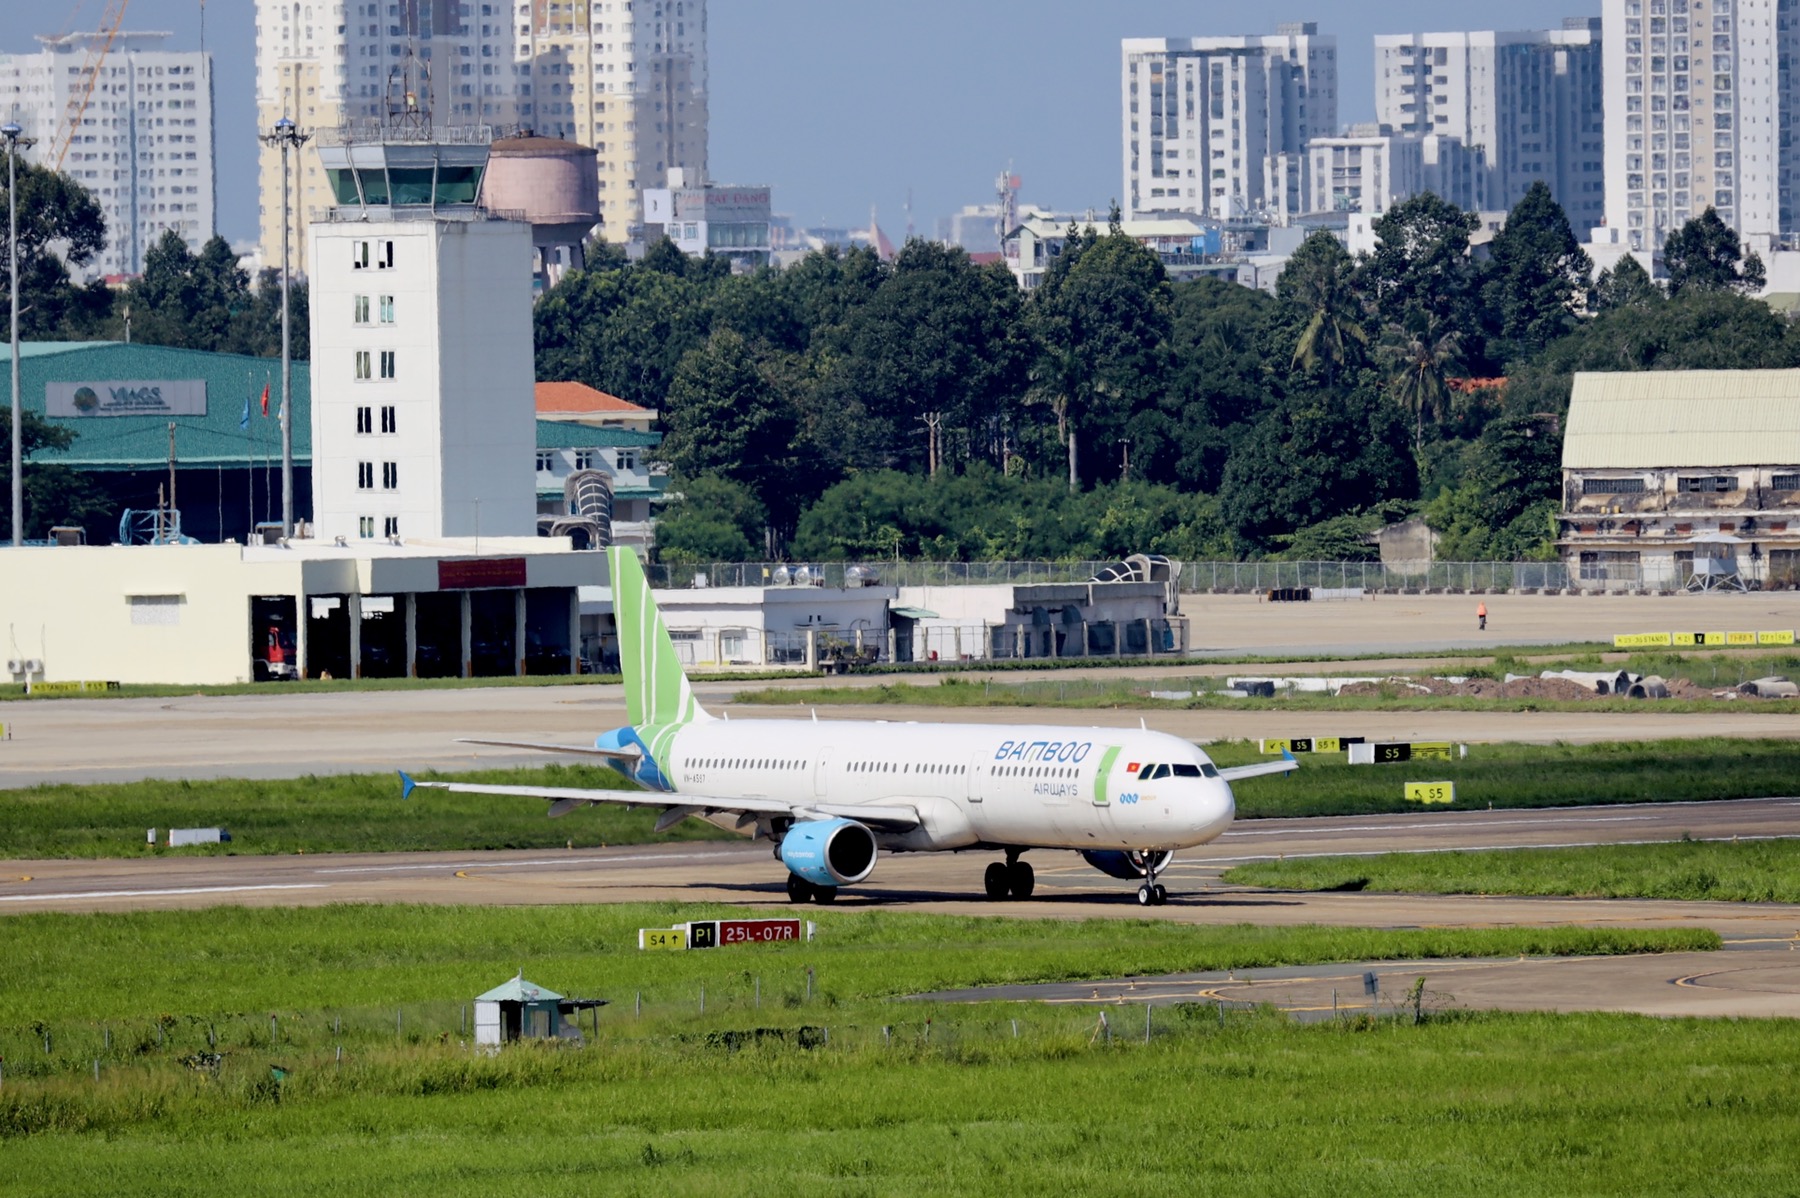 Bamboo Airways bay chuyên cơ khứ hồi đưa gần 200 y bác sĩ từ miền Trung vào TP HCM chống dịch - Ảnh 1.